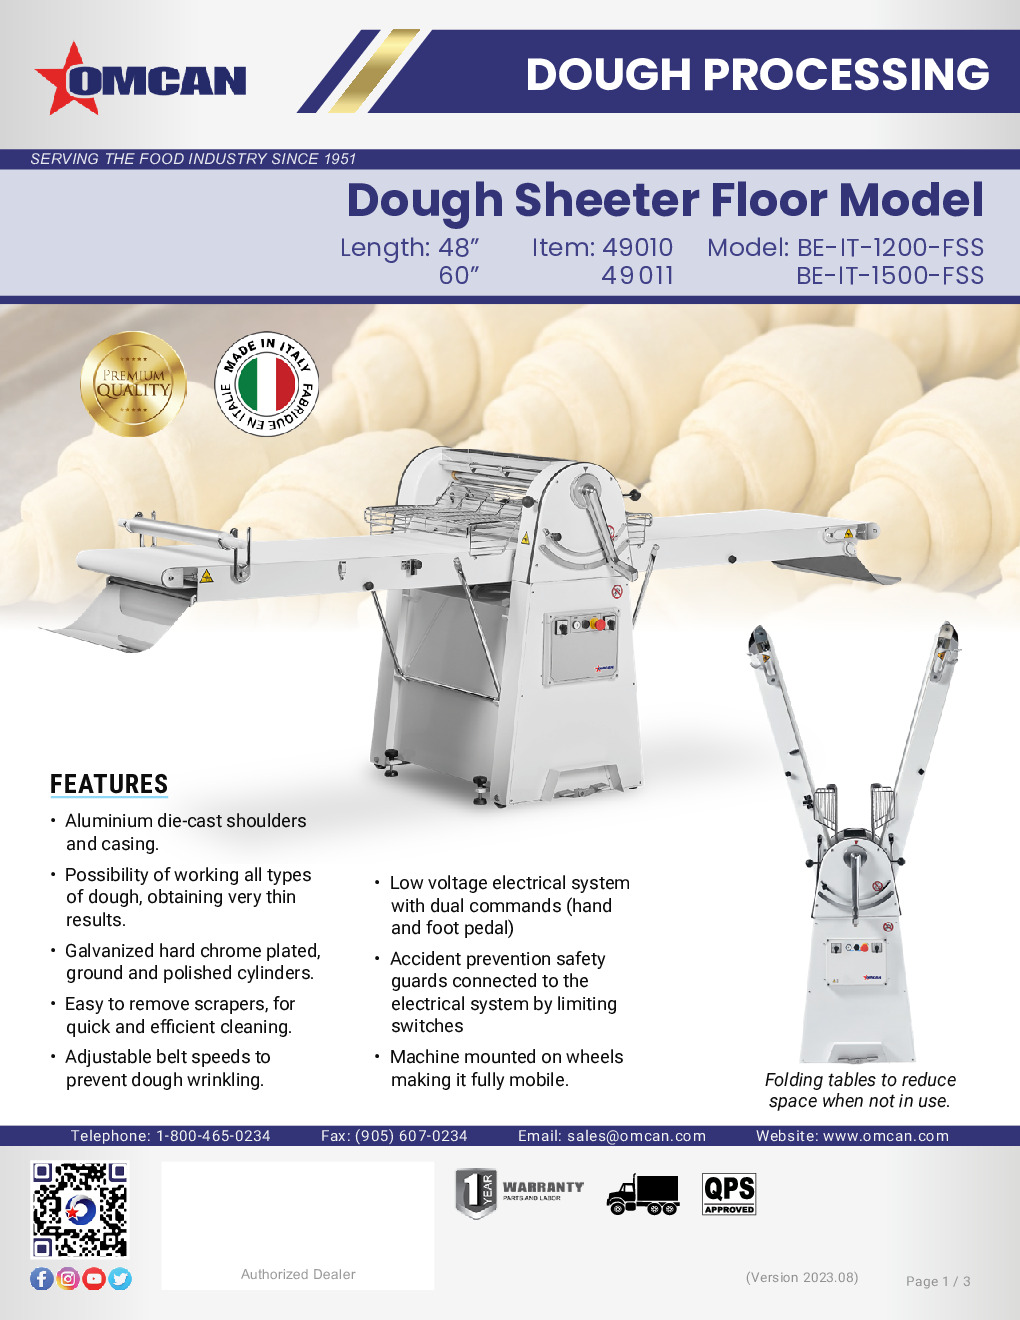 Omcan USA 49011 Dough Sheeter